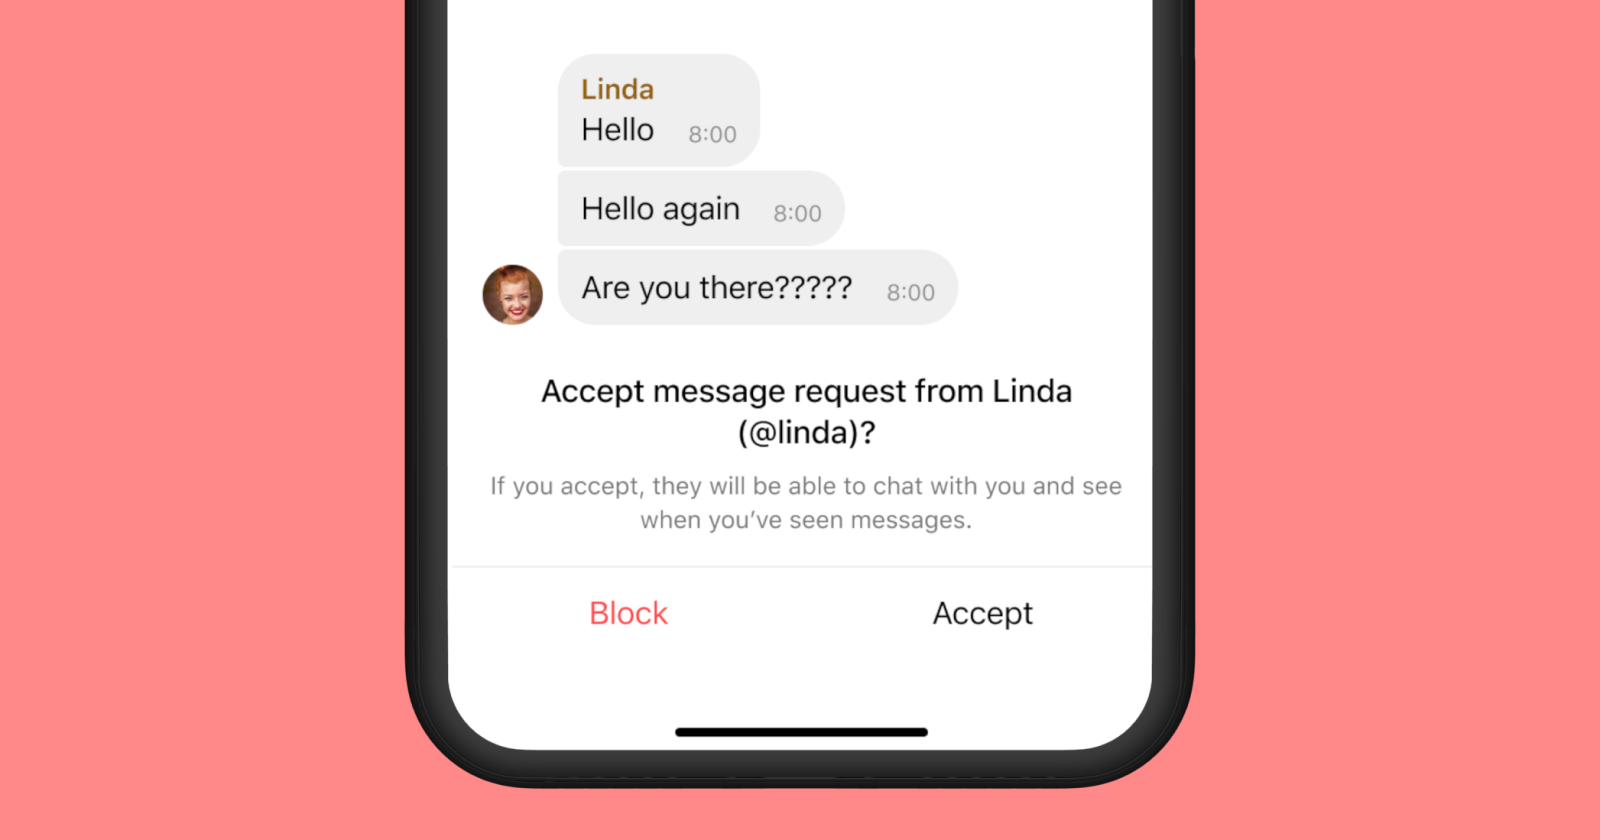 Puedes aceptar o bloquear una solicitud de conversación.